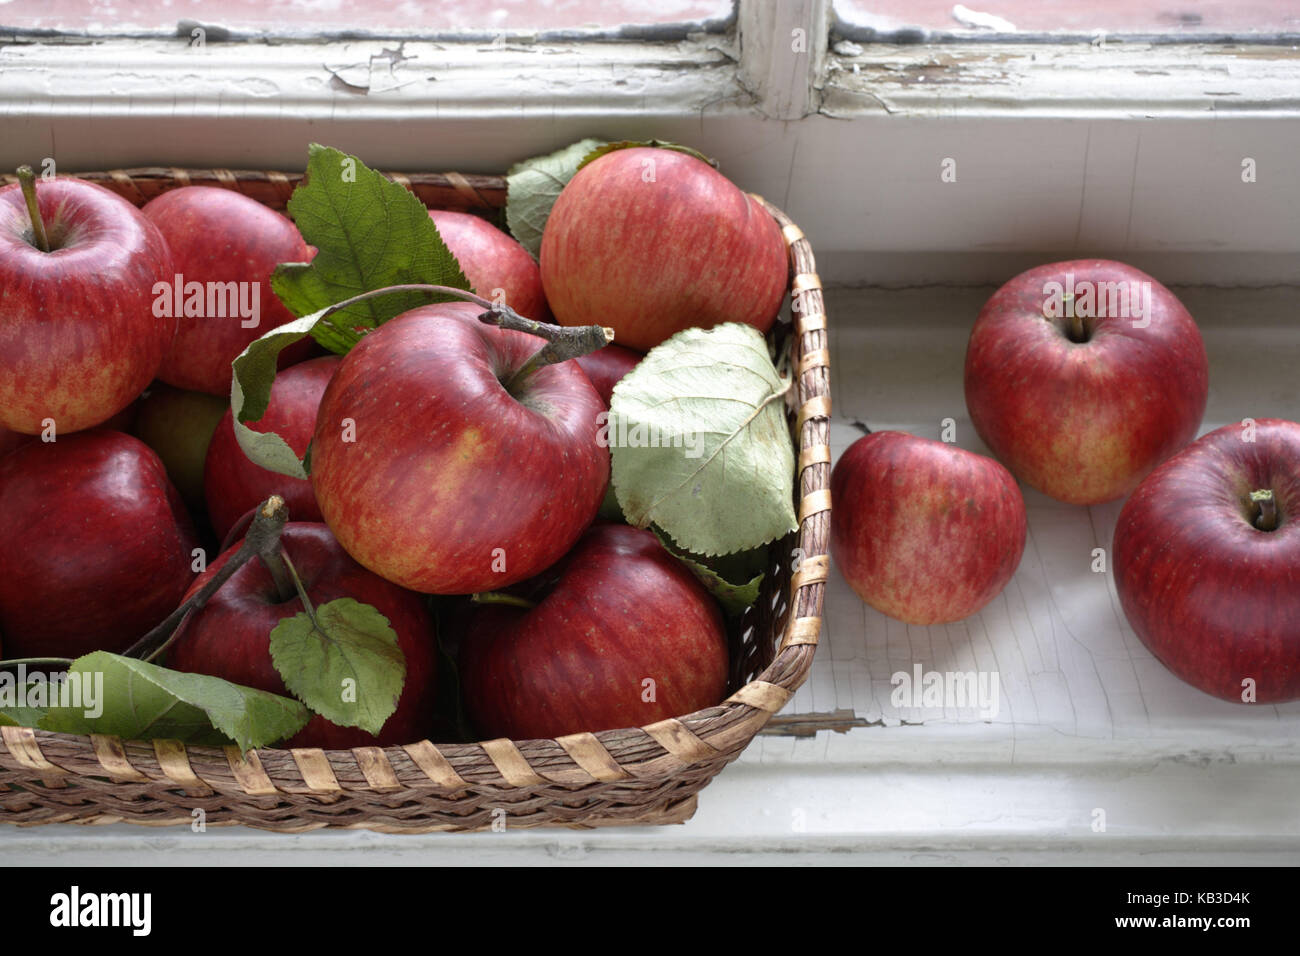 Apples in a wicker basket, Stock Photo